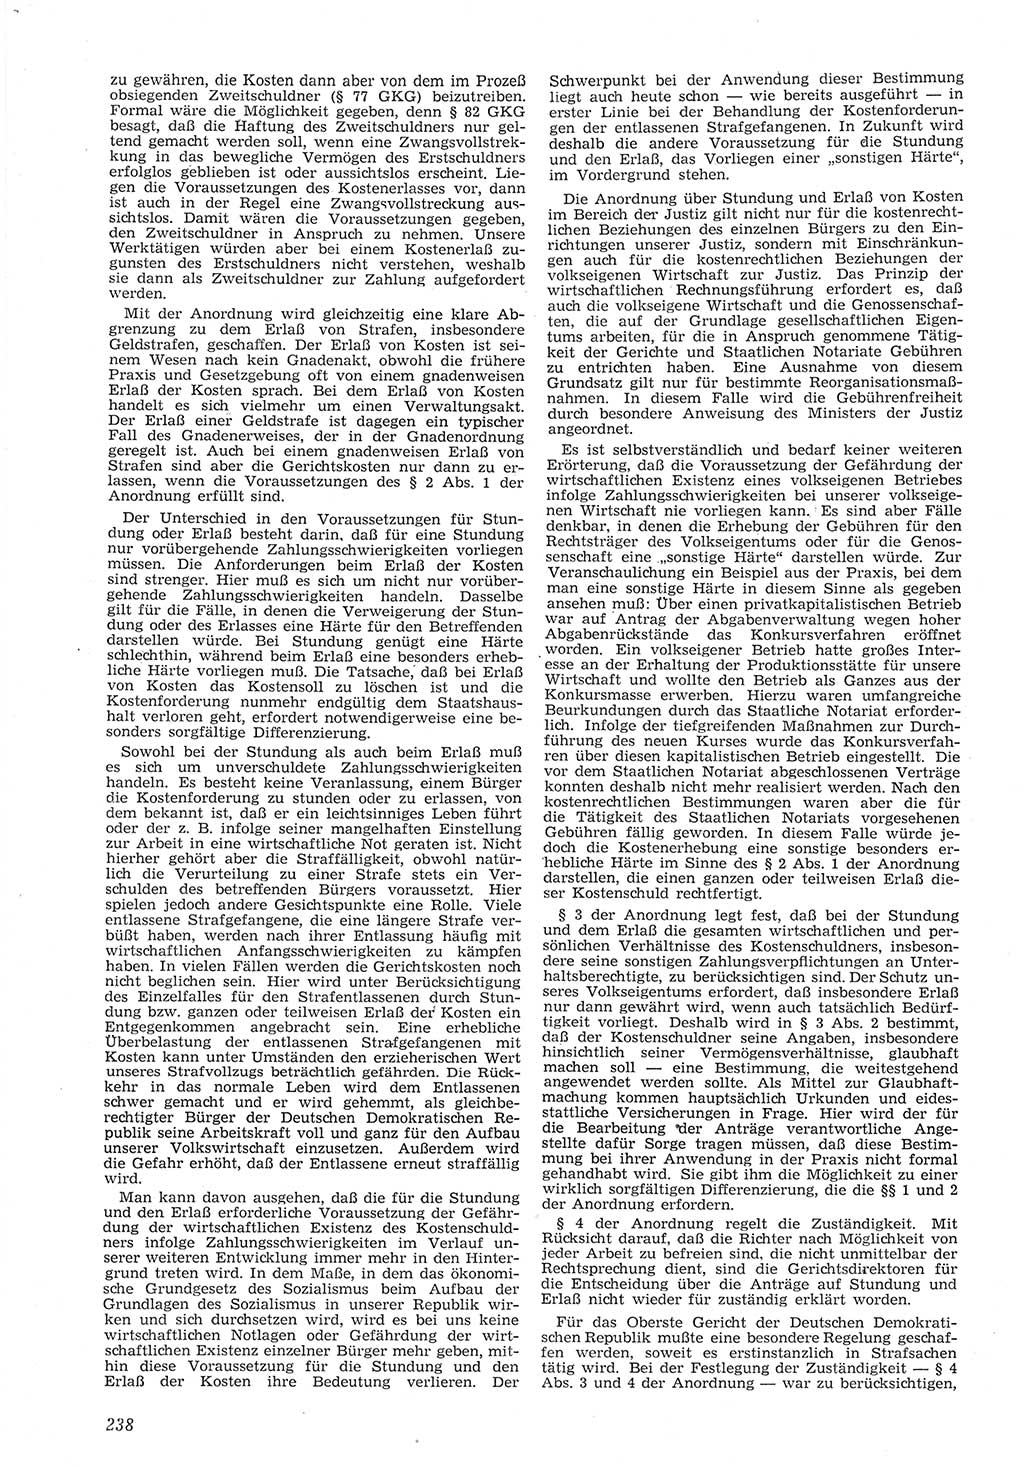 Neue Justiz (NJ), Zeitschrift für Recht und Rechtswissenschaft [Deutsche Demokratische Republik (DDR)], 8. Jahrgang 1954, Seite 238 (NJ DDR 1954, S. 238)